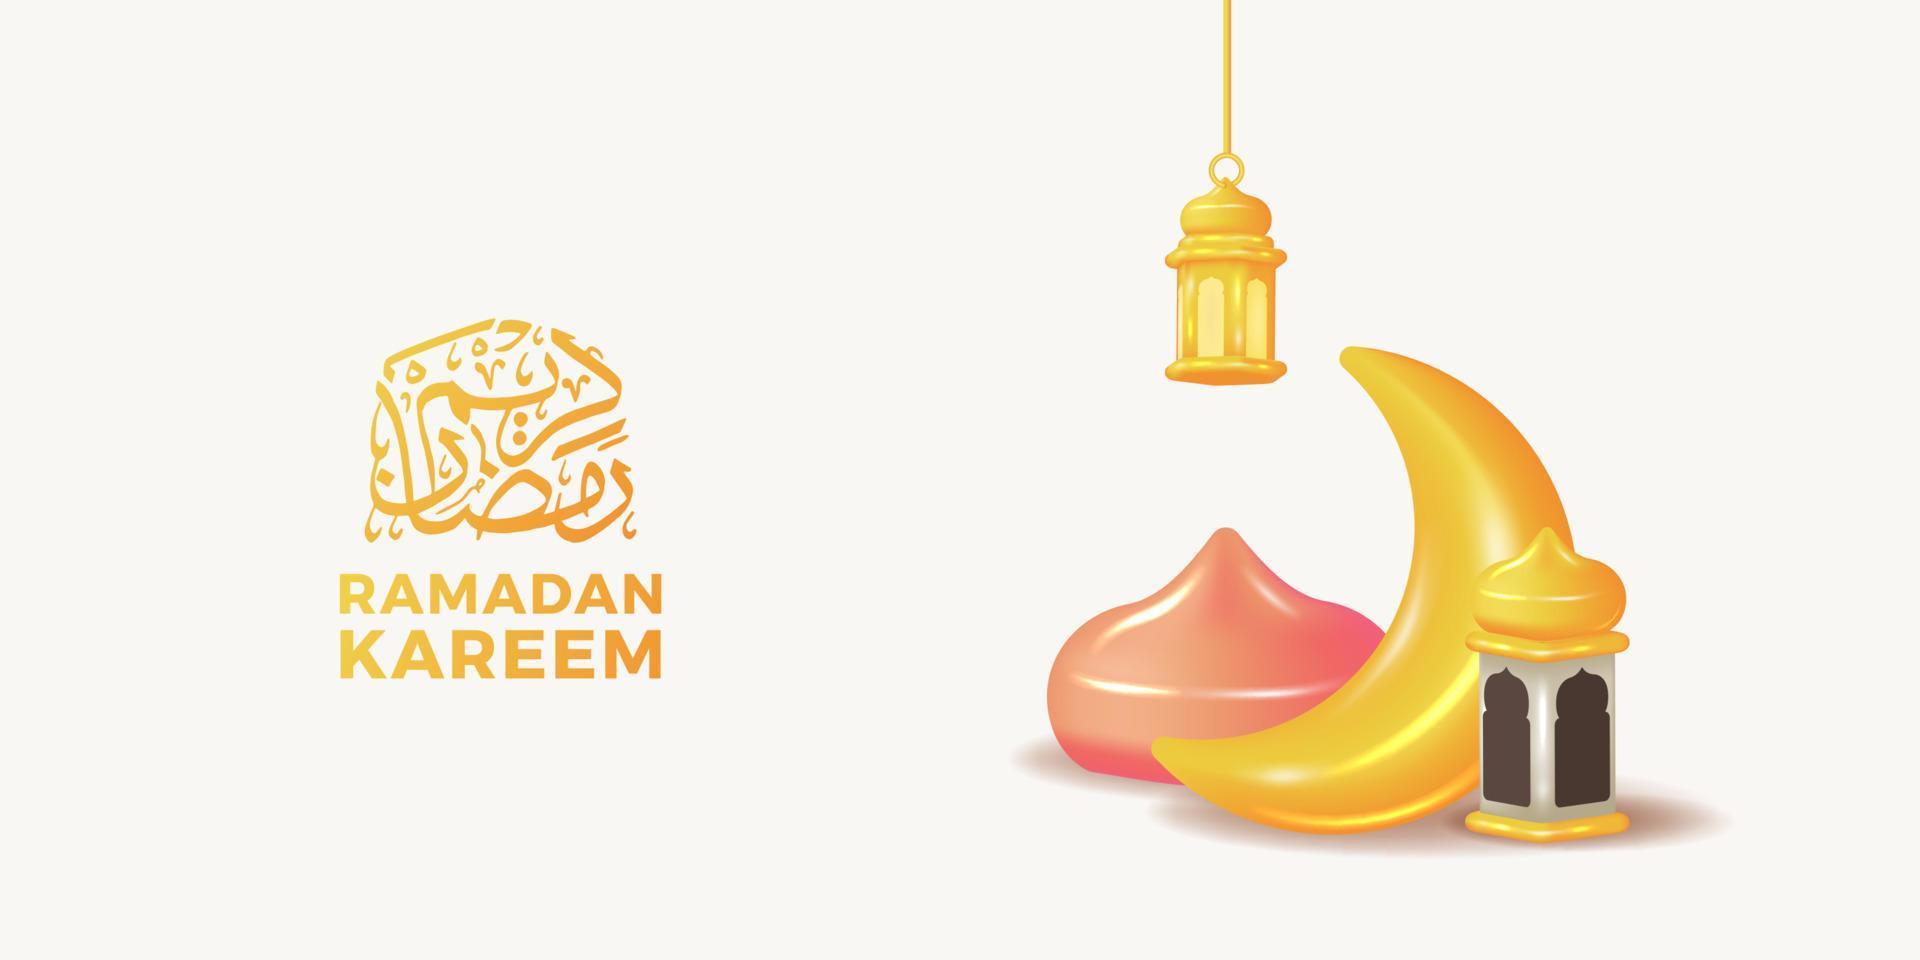 3D süße Mondhalbmond- und Laternenmoscheendekoration für islamische Eventparty im Ramadan vektor